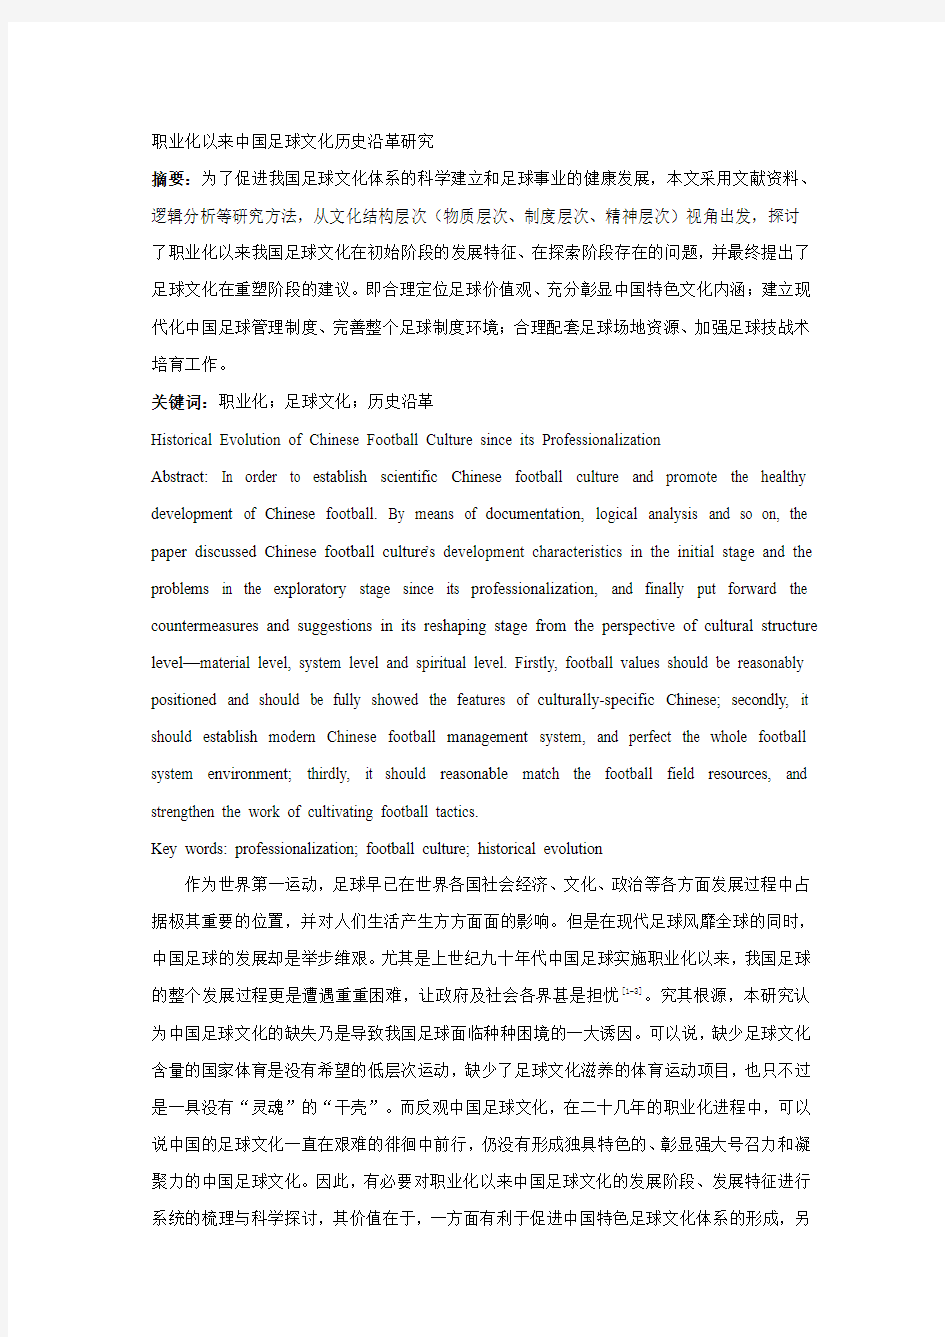 职业化以来中国足球文化历史沿革研究(终审)